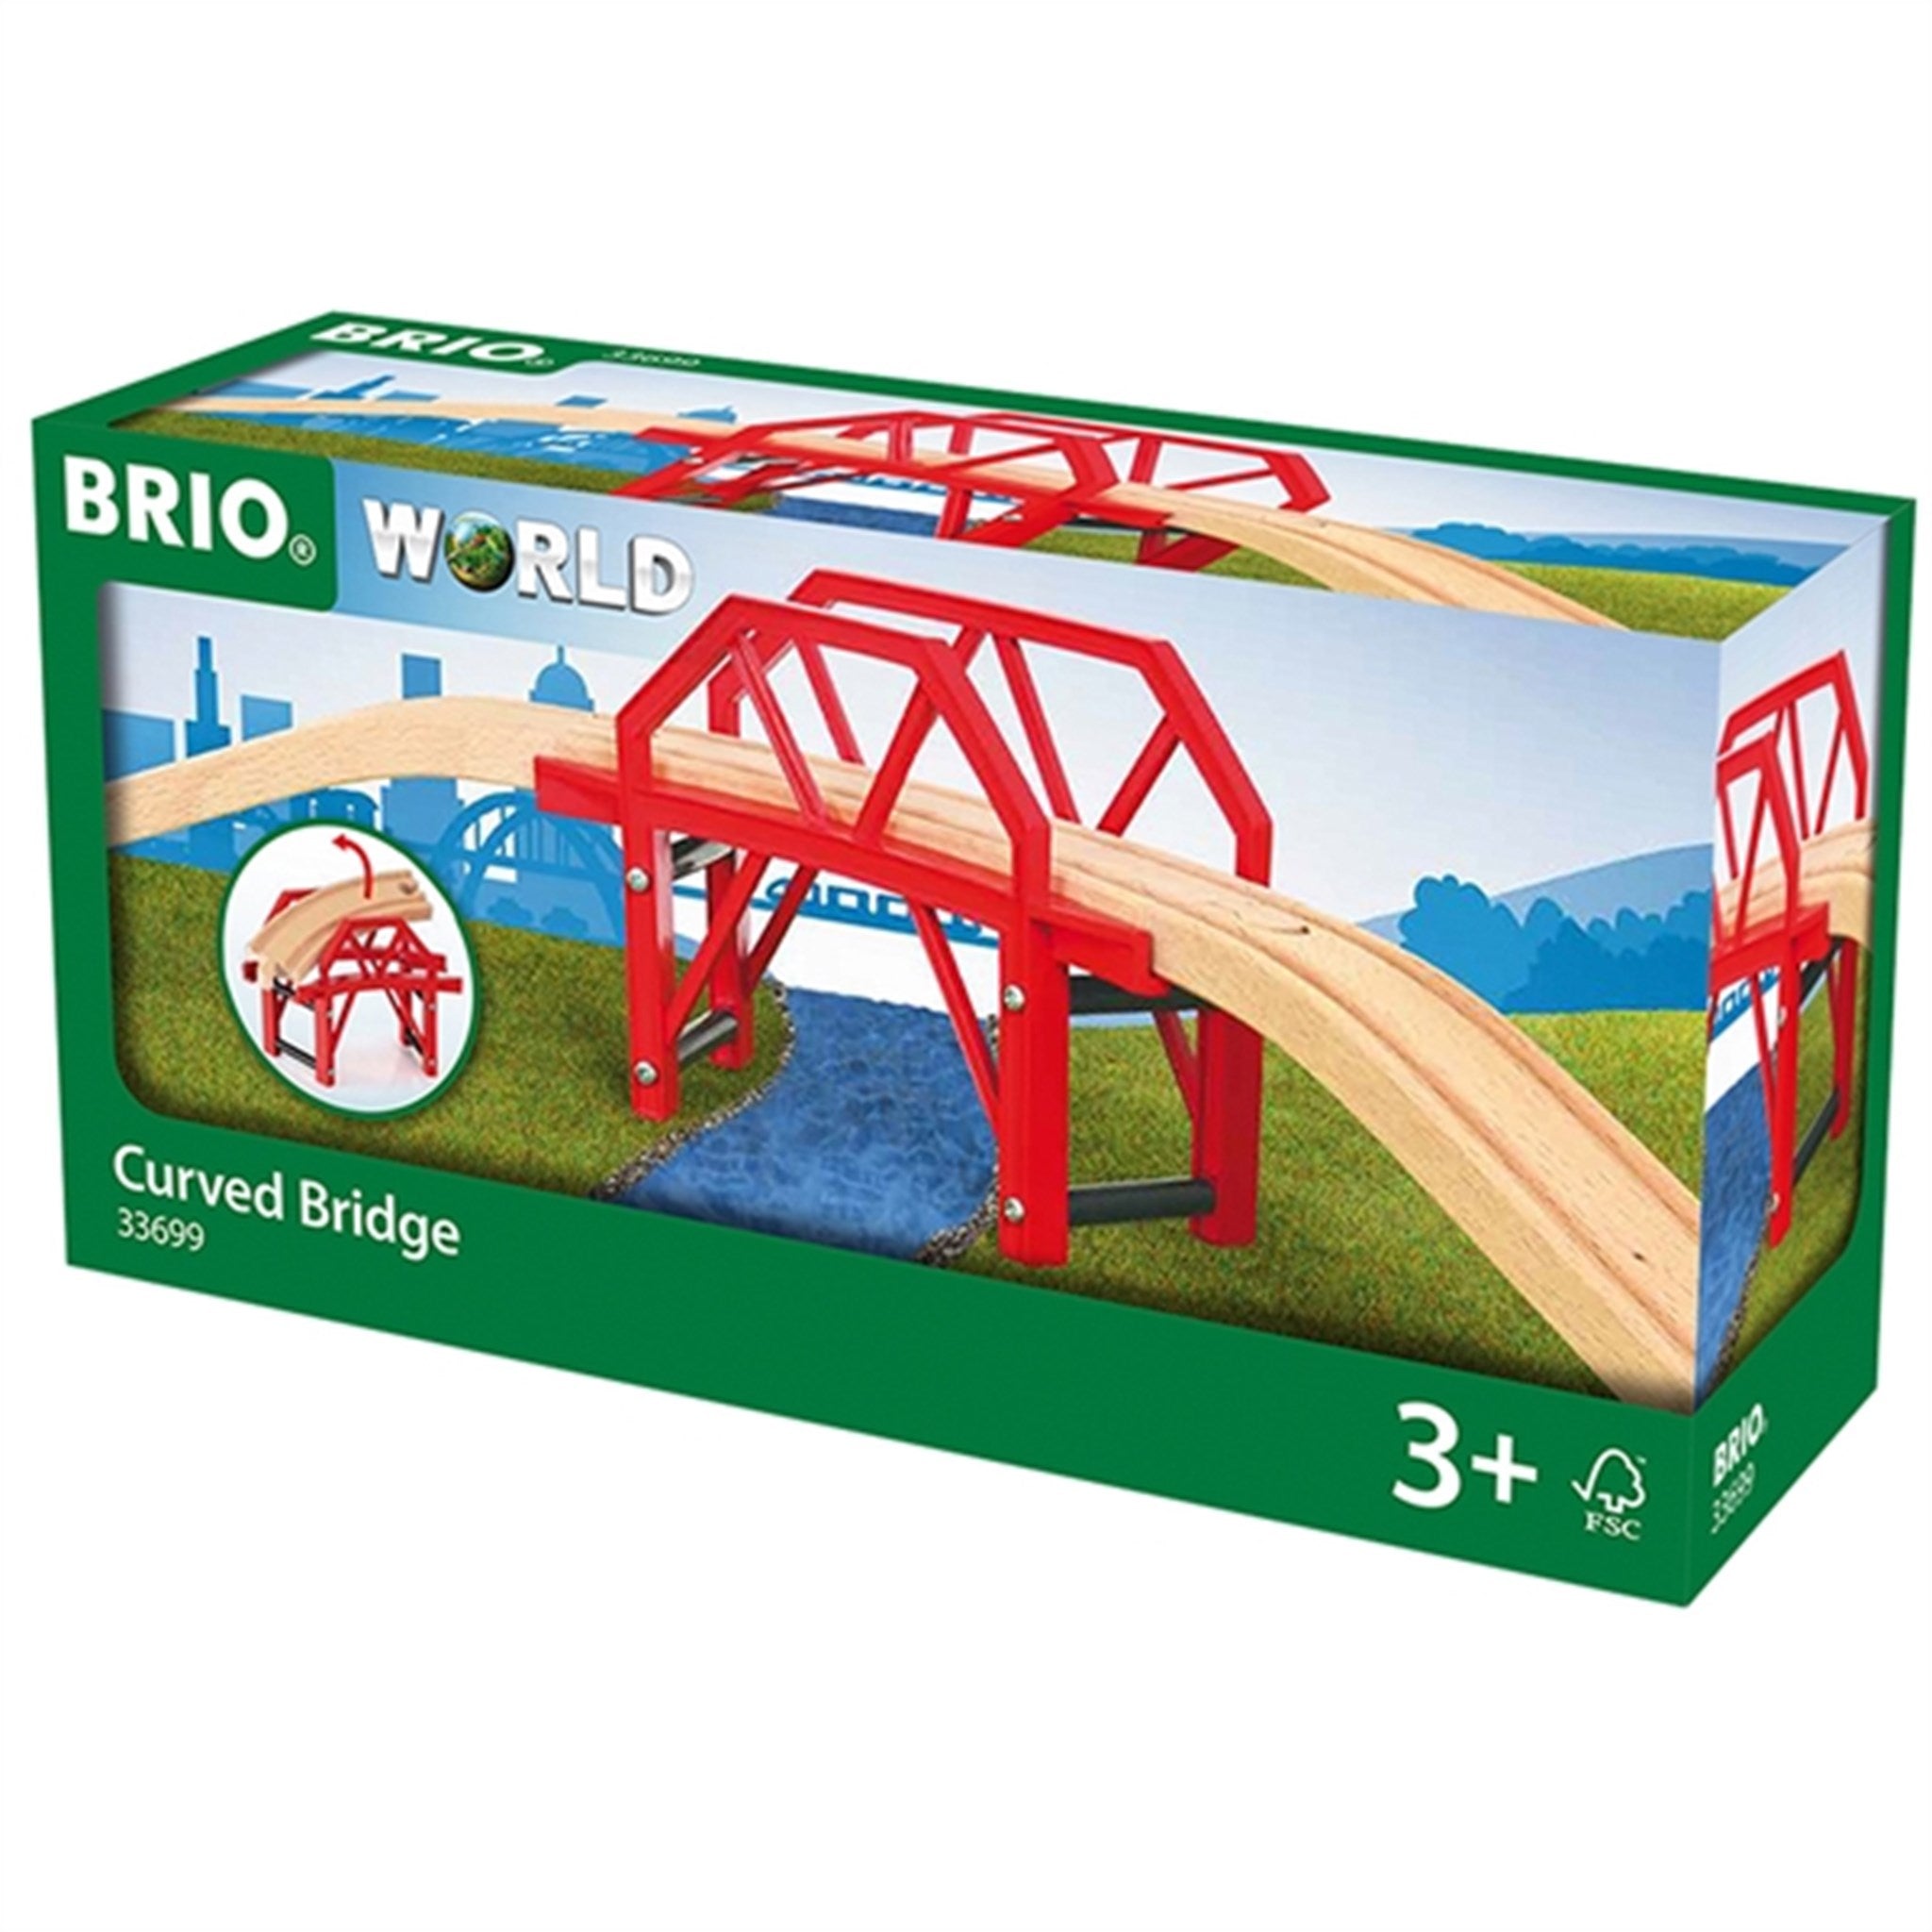 BRIO® Curved Bridge 2